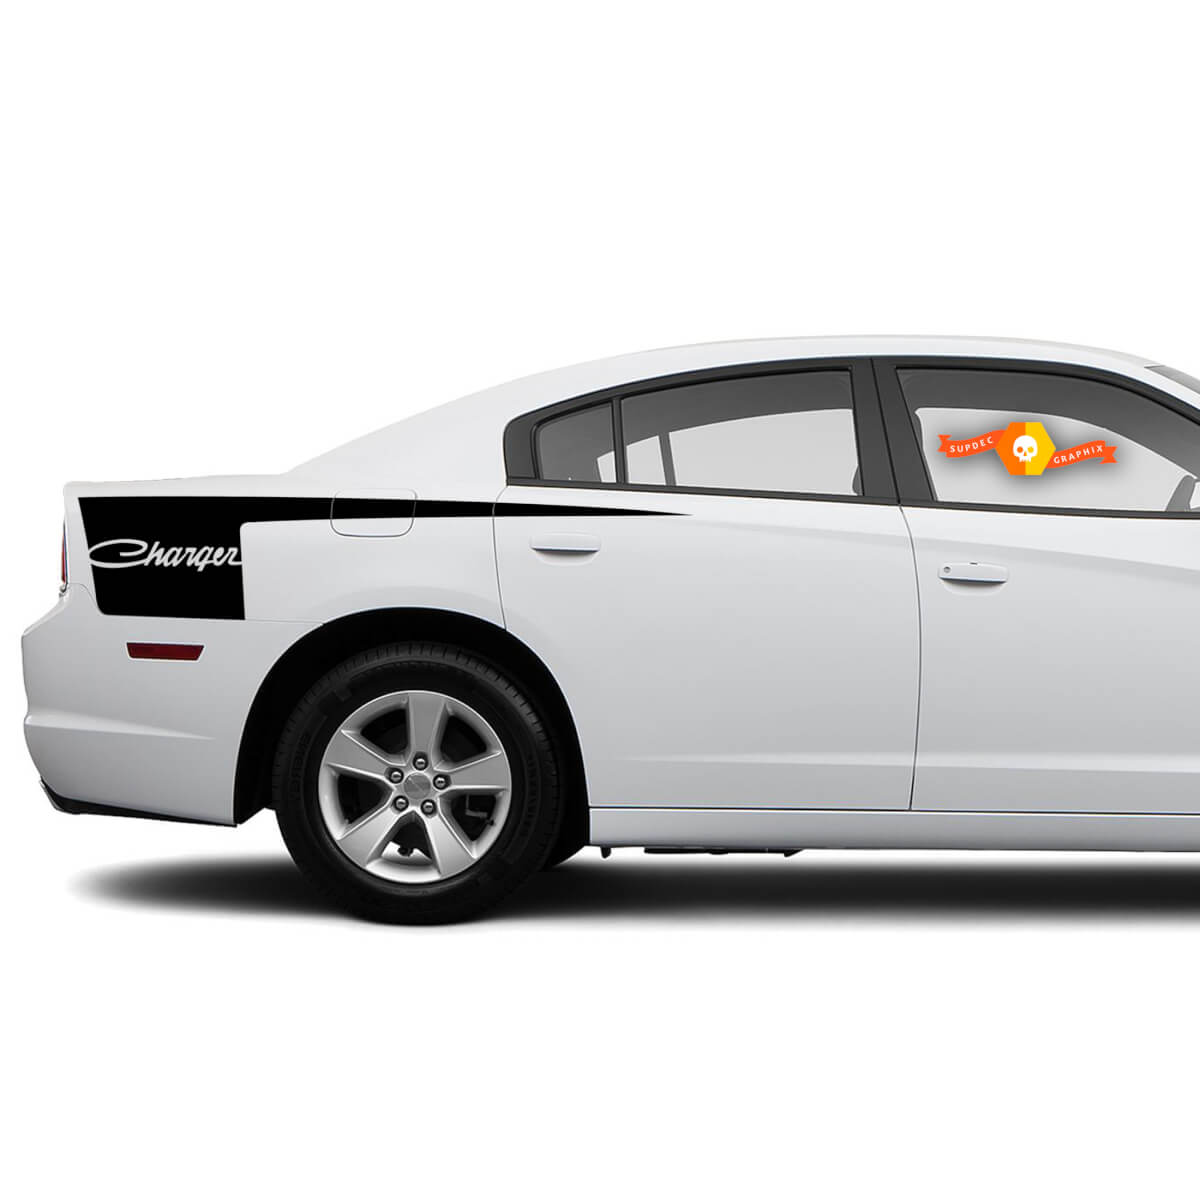 Dodge Charger Retro Seite Beil Streifen Aufkleber Aufkleber Grafiken passt zu Modellen 2011-2014